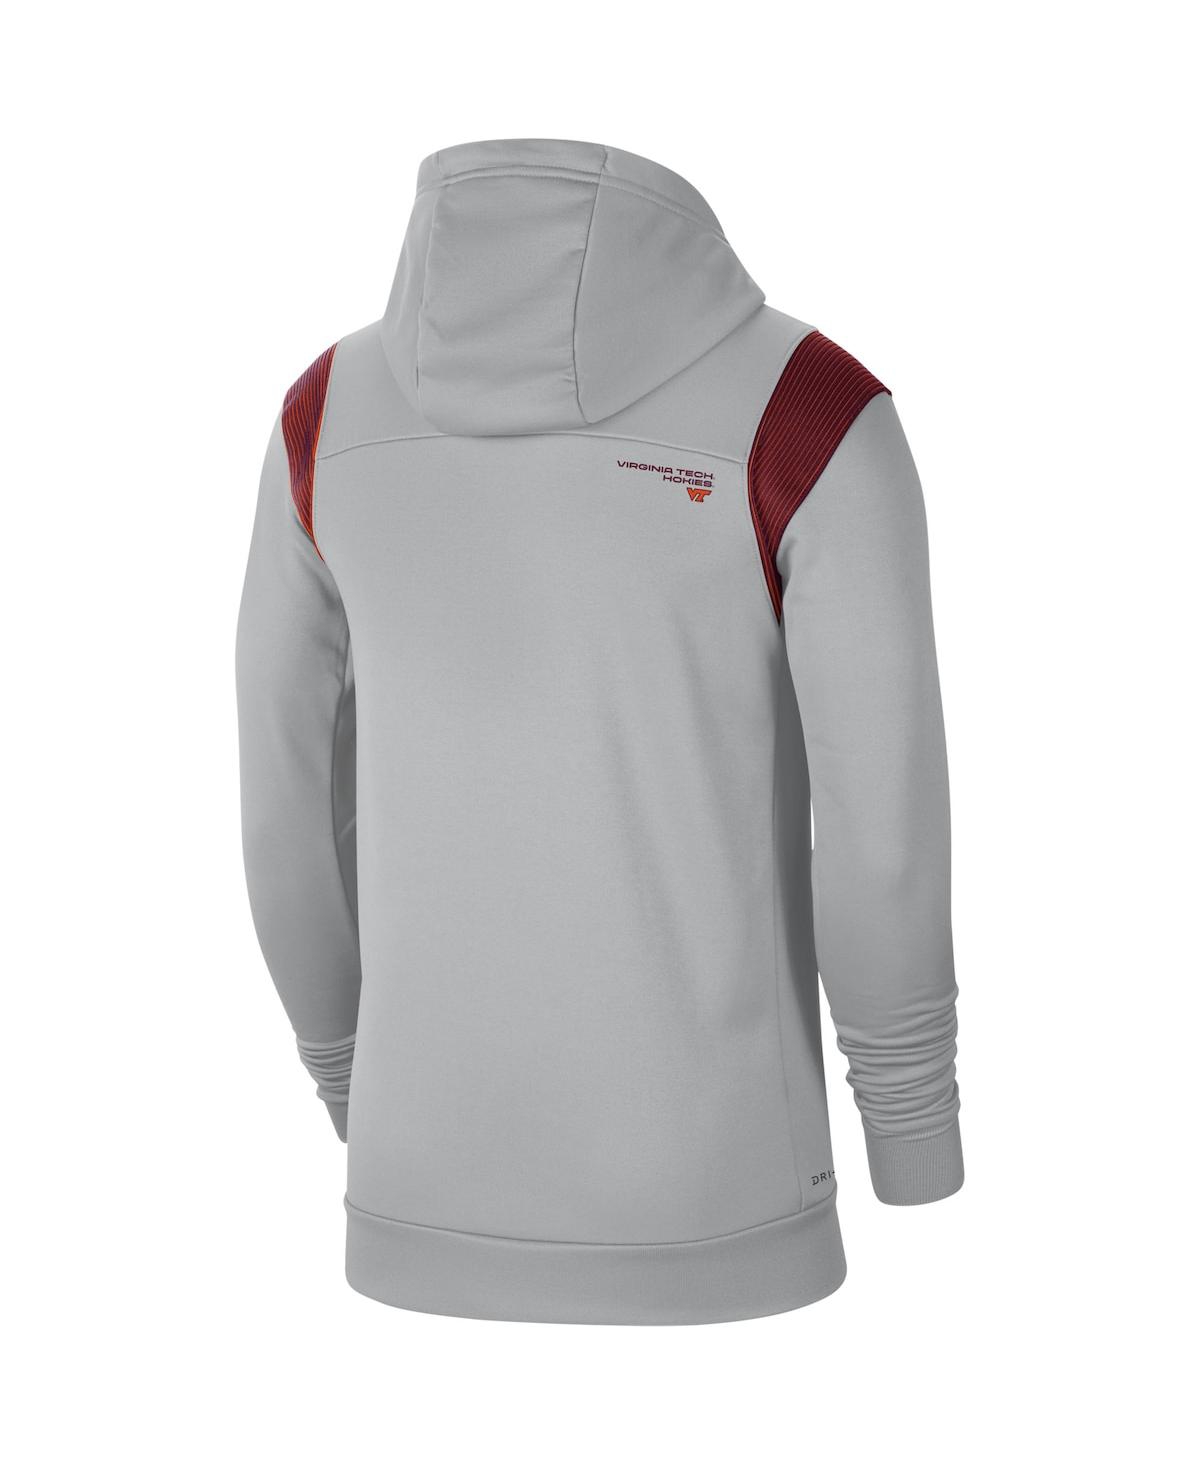 Shop Nike Men's  Gray Virginia Tech Hokies 2021 Sideline Performance Full-zip Hoodie